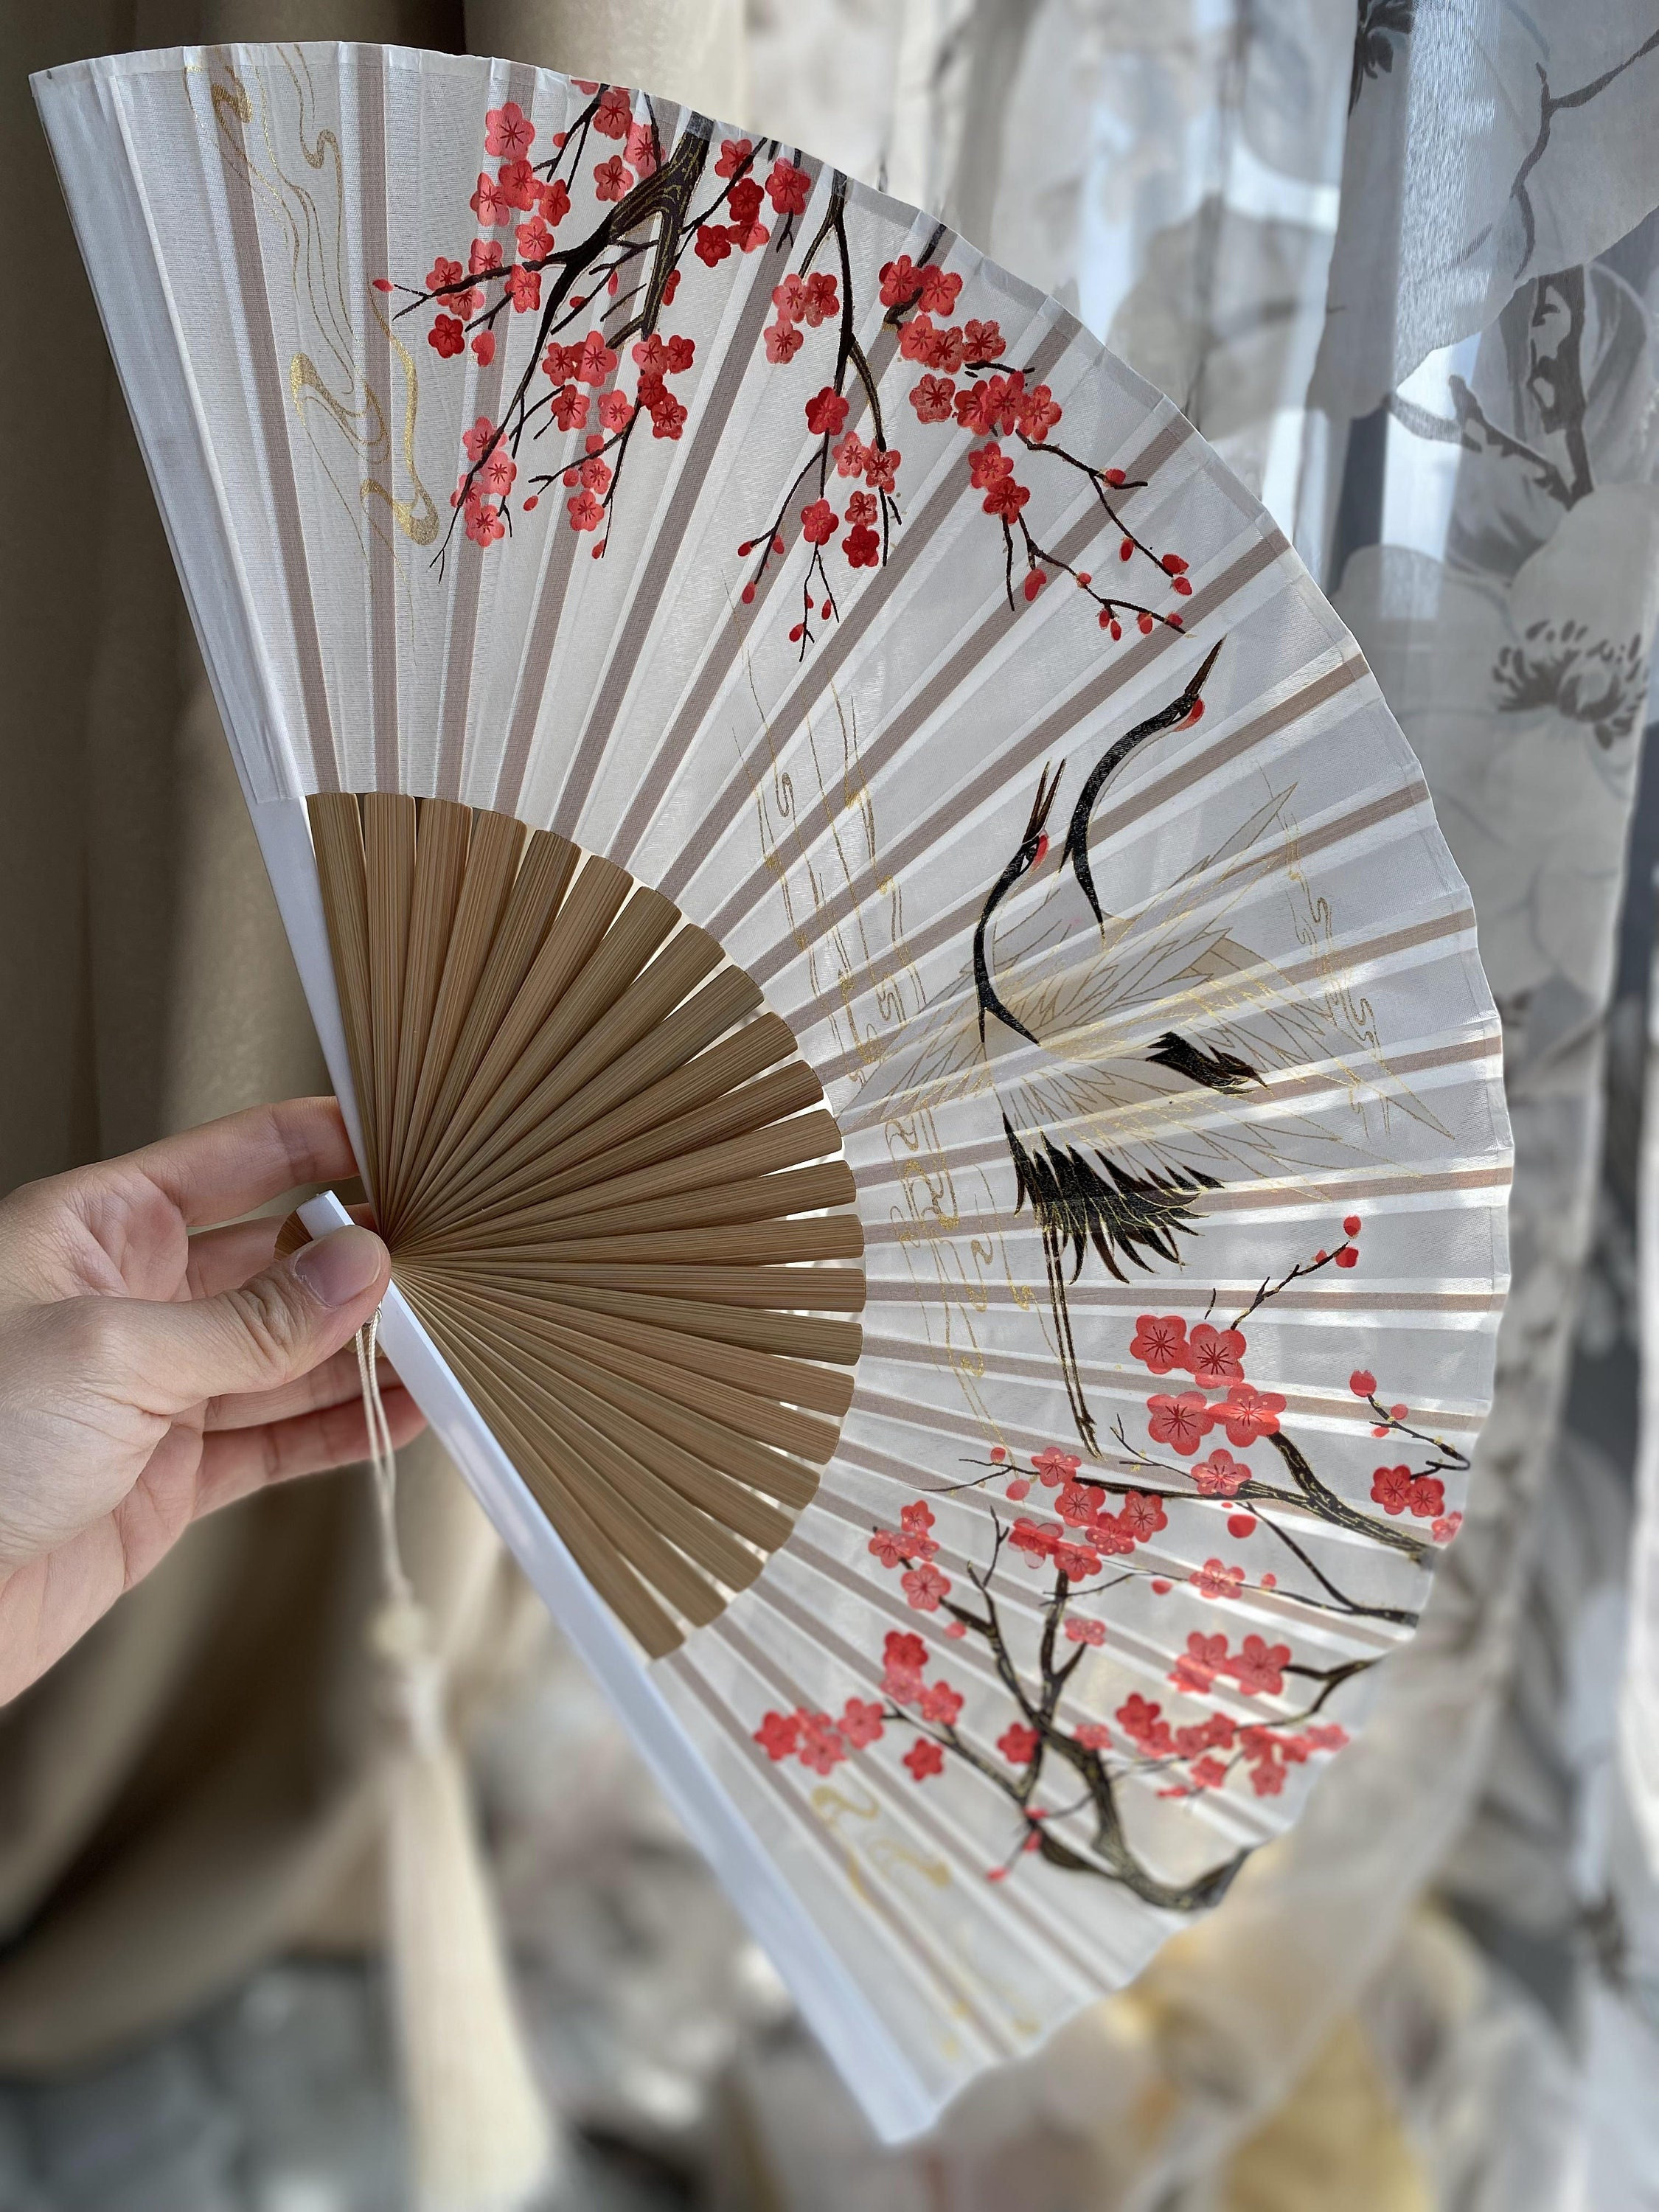 NOLITOY Handheld Fan Foldable Hand Fan Foldable Vintage Hand Fan Japanese  Fan Wedding Guest Fan Paper Fans Handheld Handhold Fan Decorative Folding